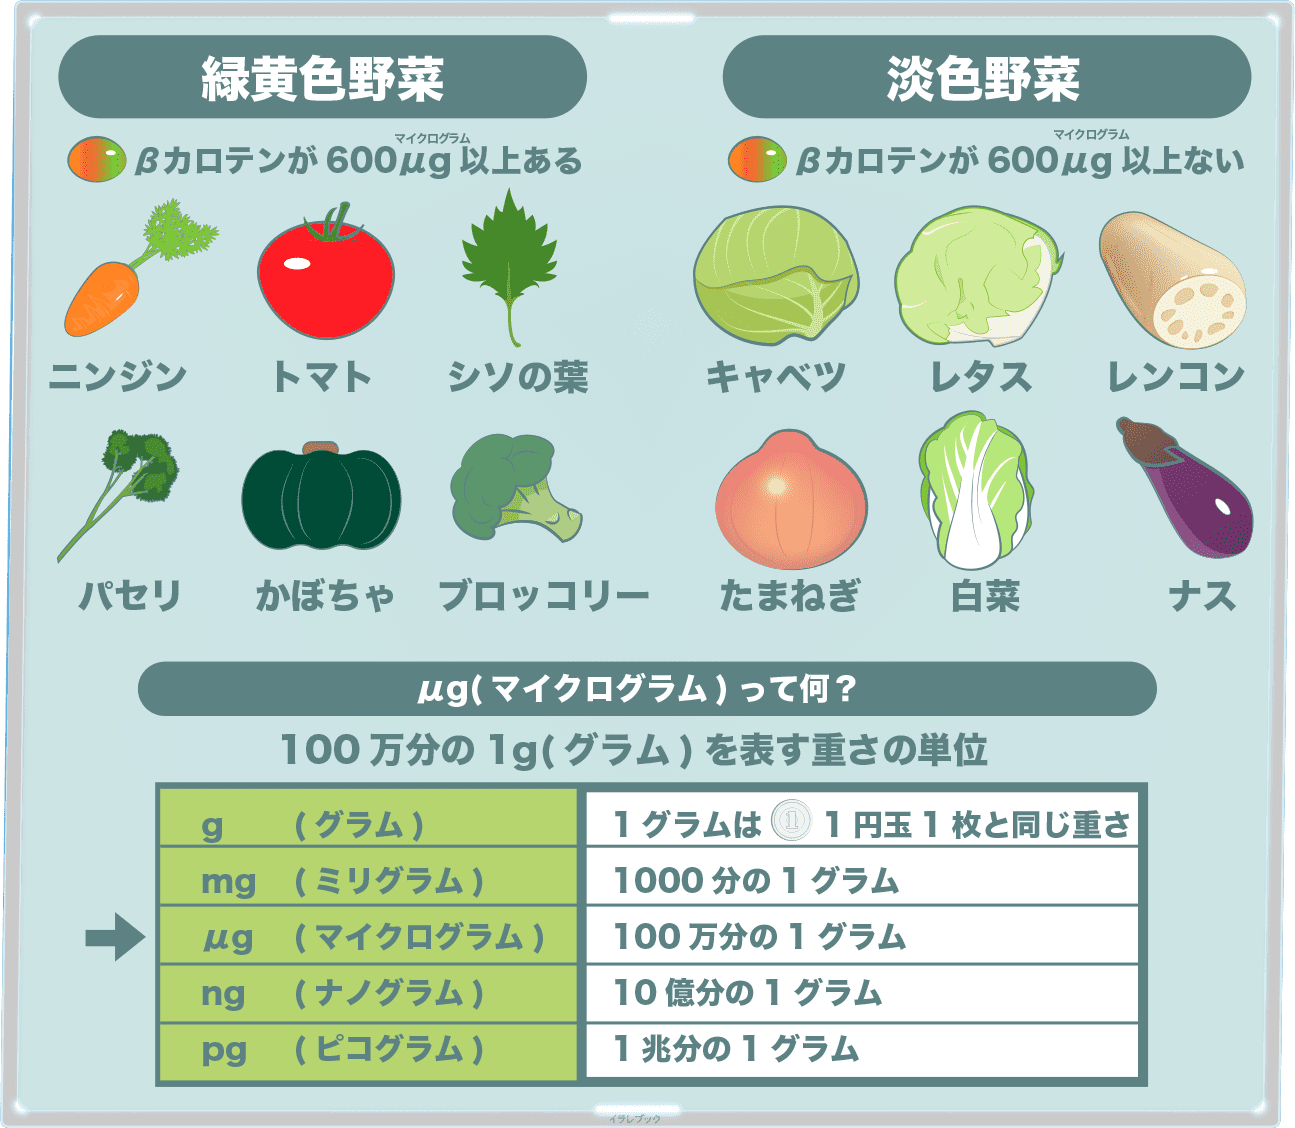 気になる野菜を選ぼう 緑黄色野菜と淡色野菜の基準とは 芋やキノコにも詳しくなる Vegetable